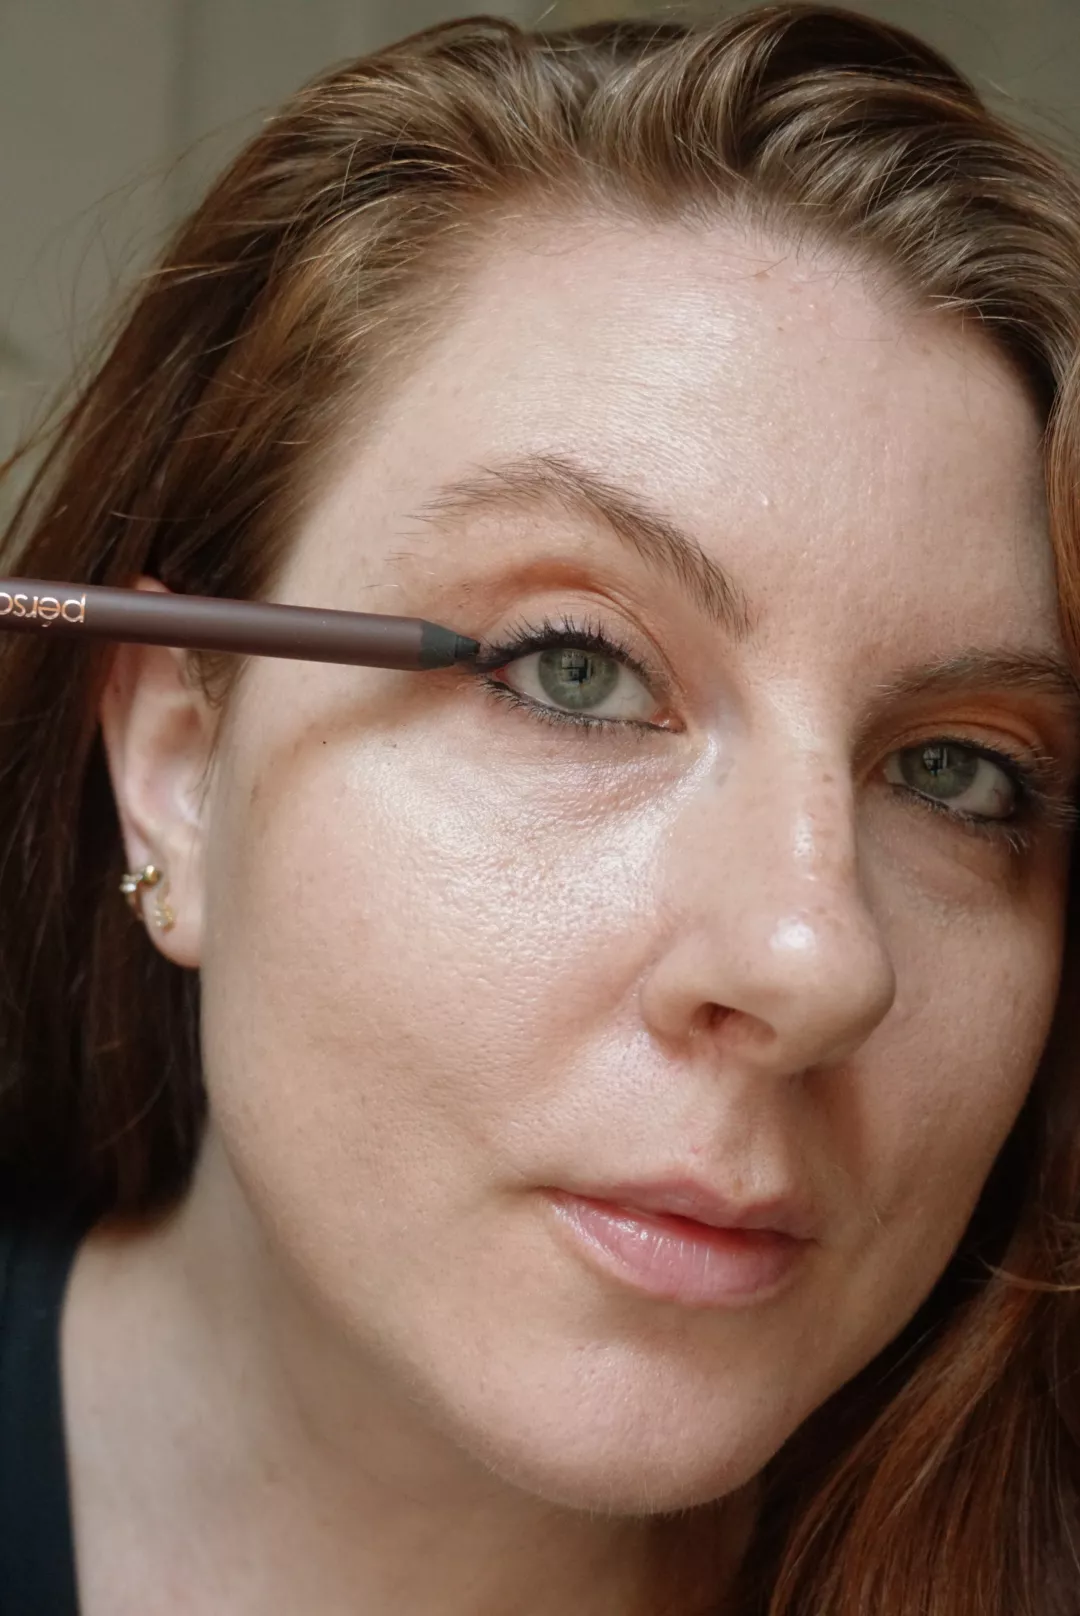 Makeup artist and Byrdie writer Ashley Rebecca applying black eyeliner to lash lines